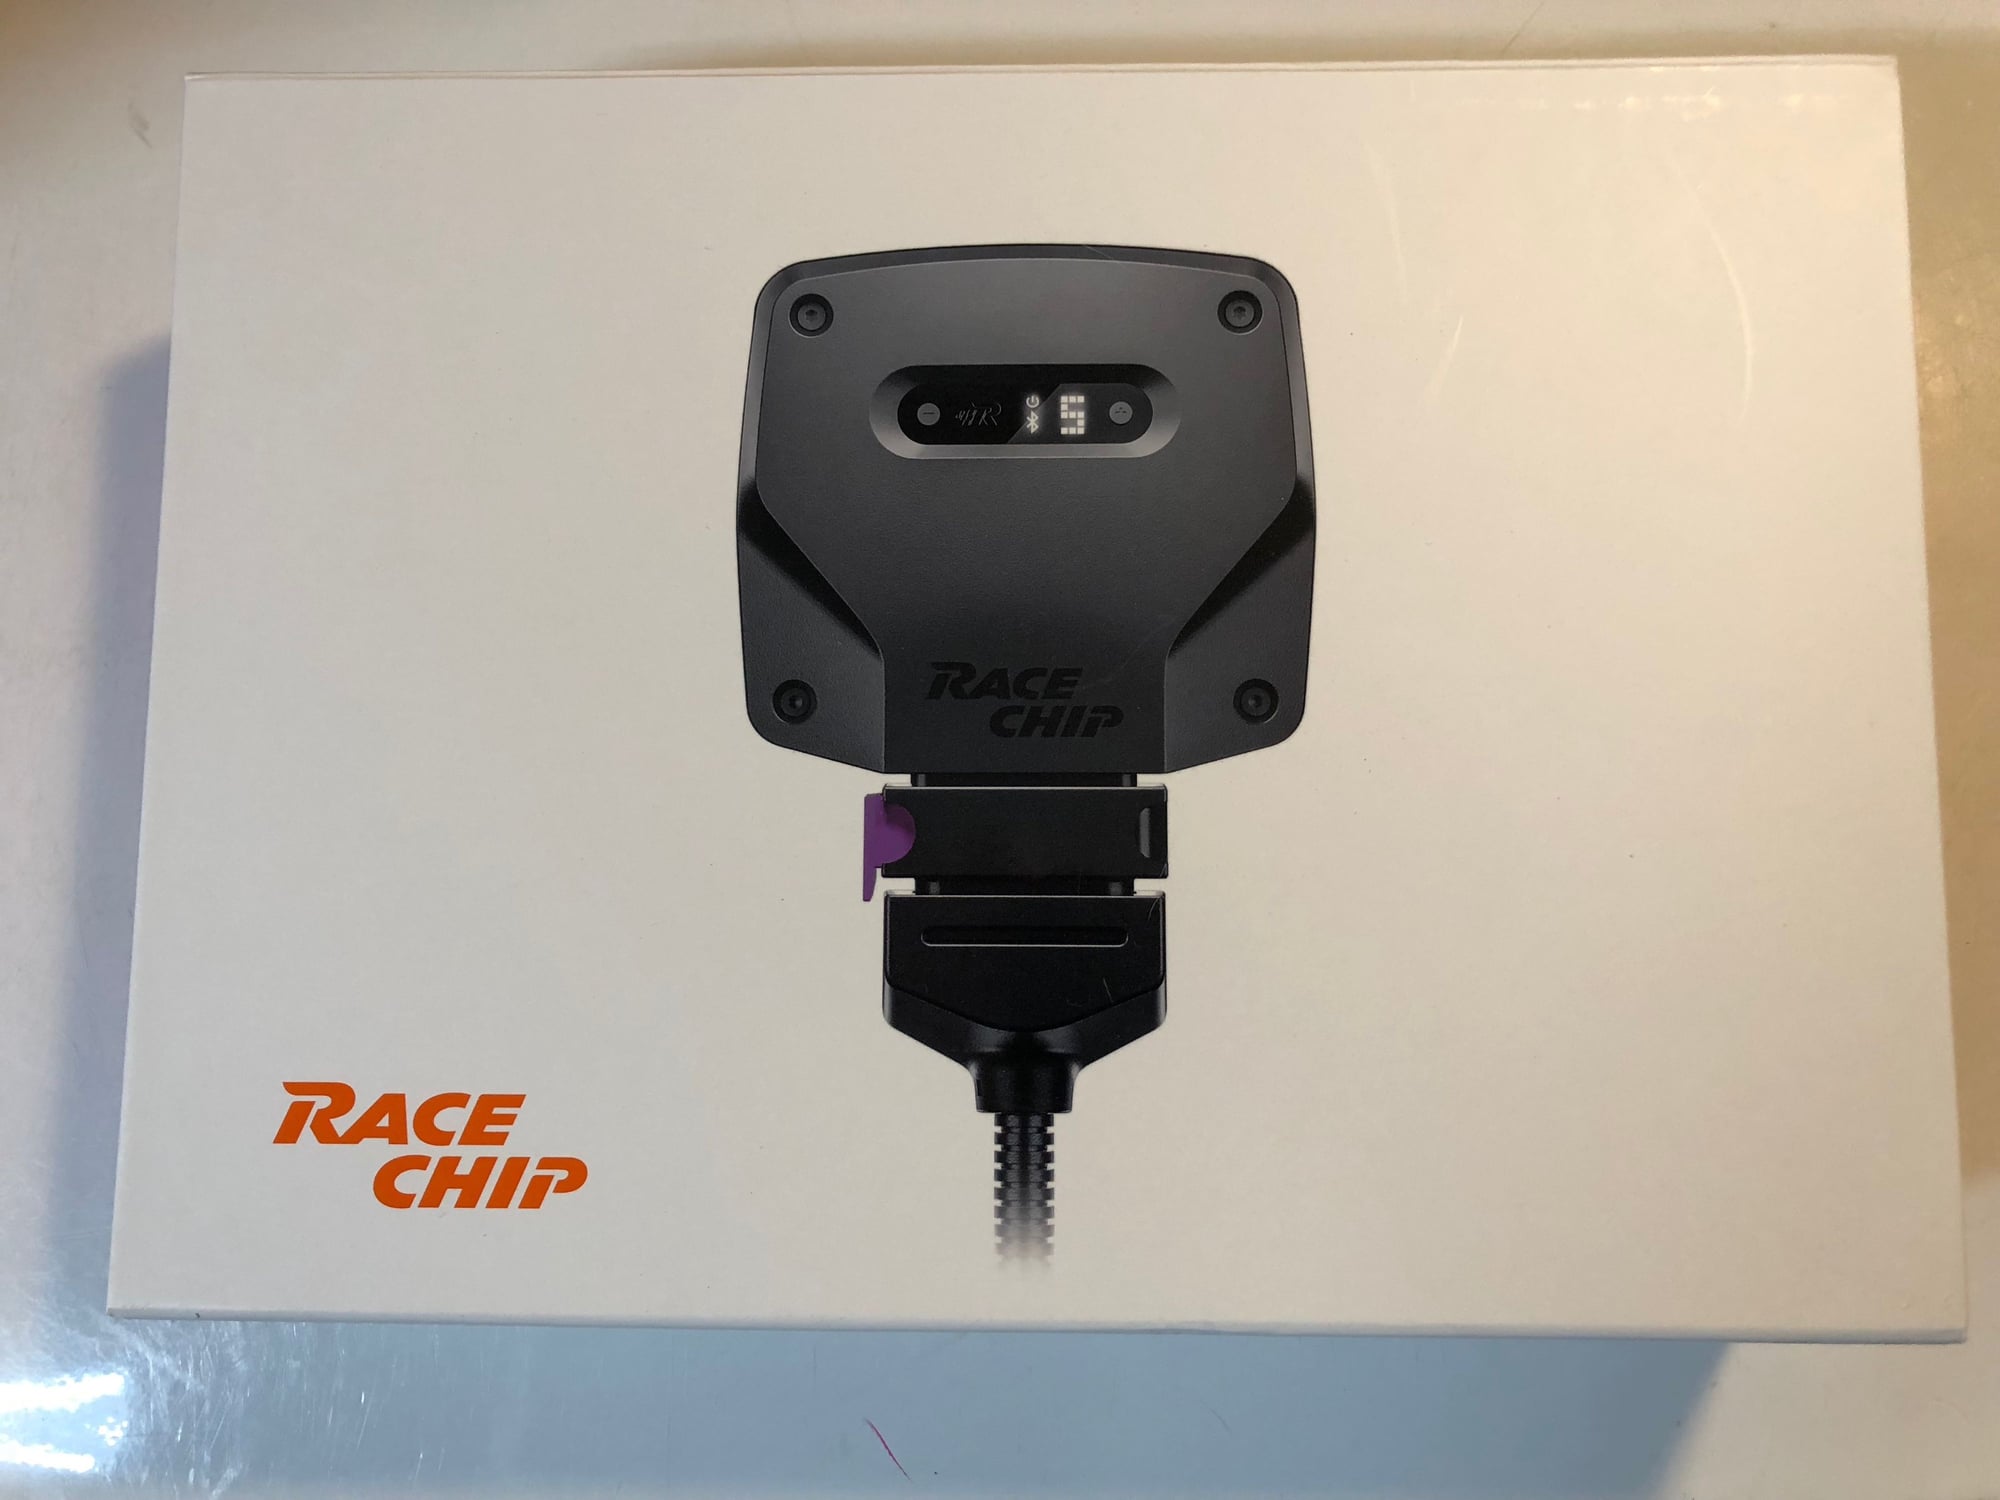 Race chip review - AudiWorld Forums